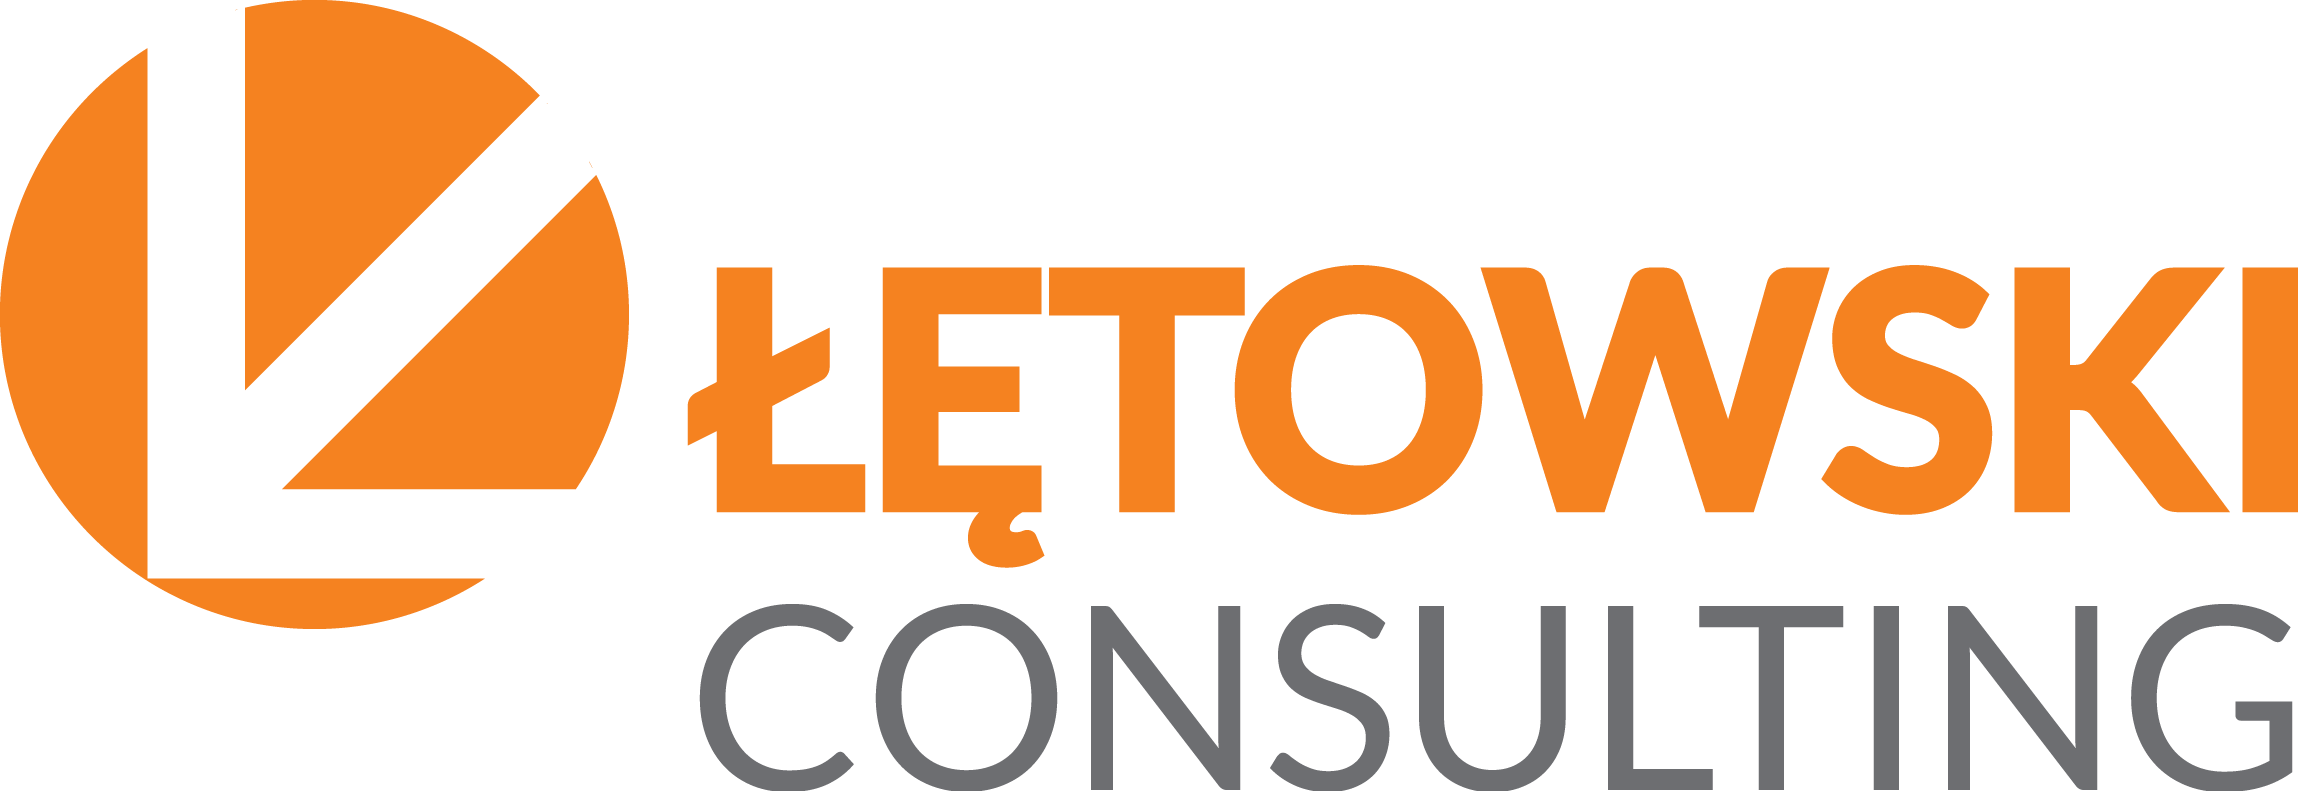 Łętowski Consulting Logo